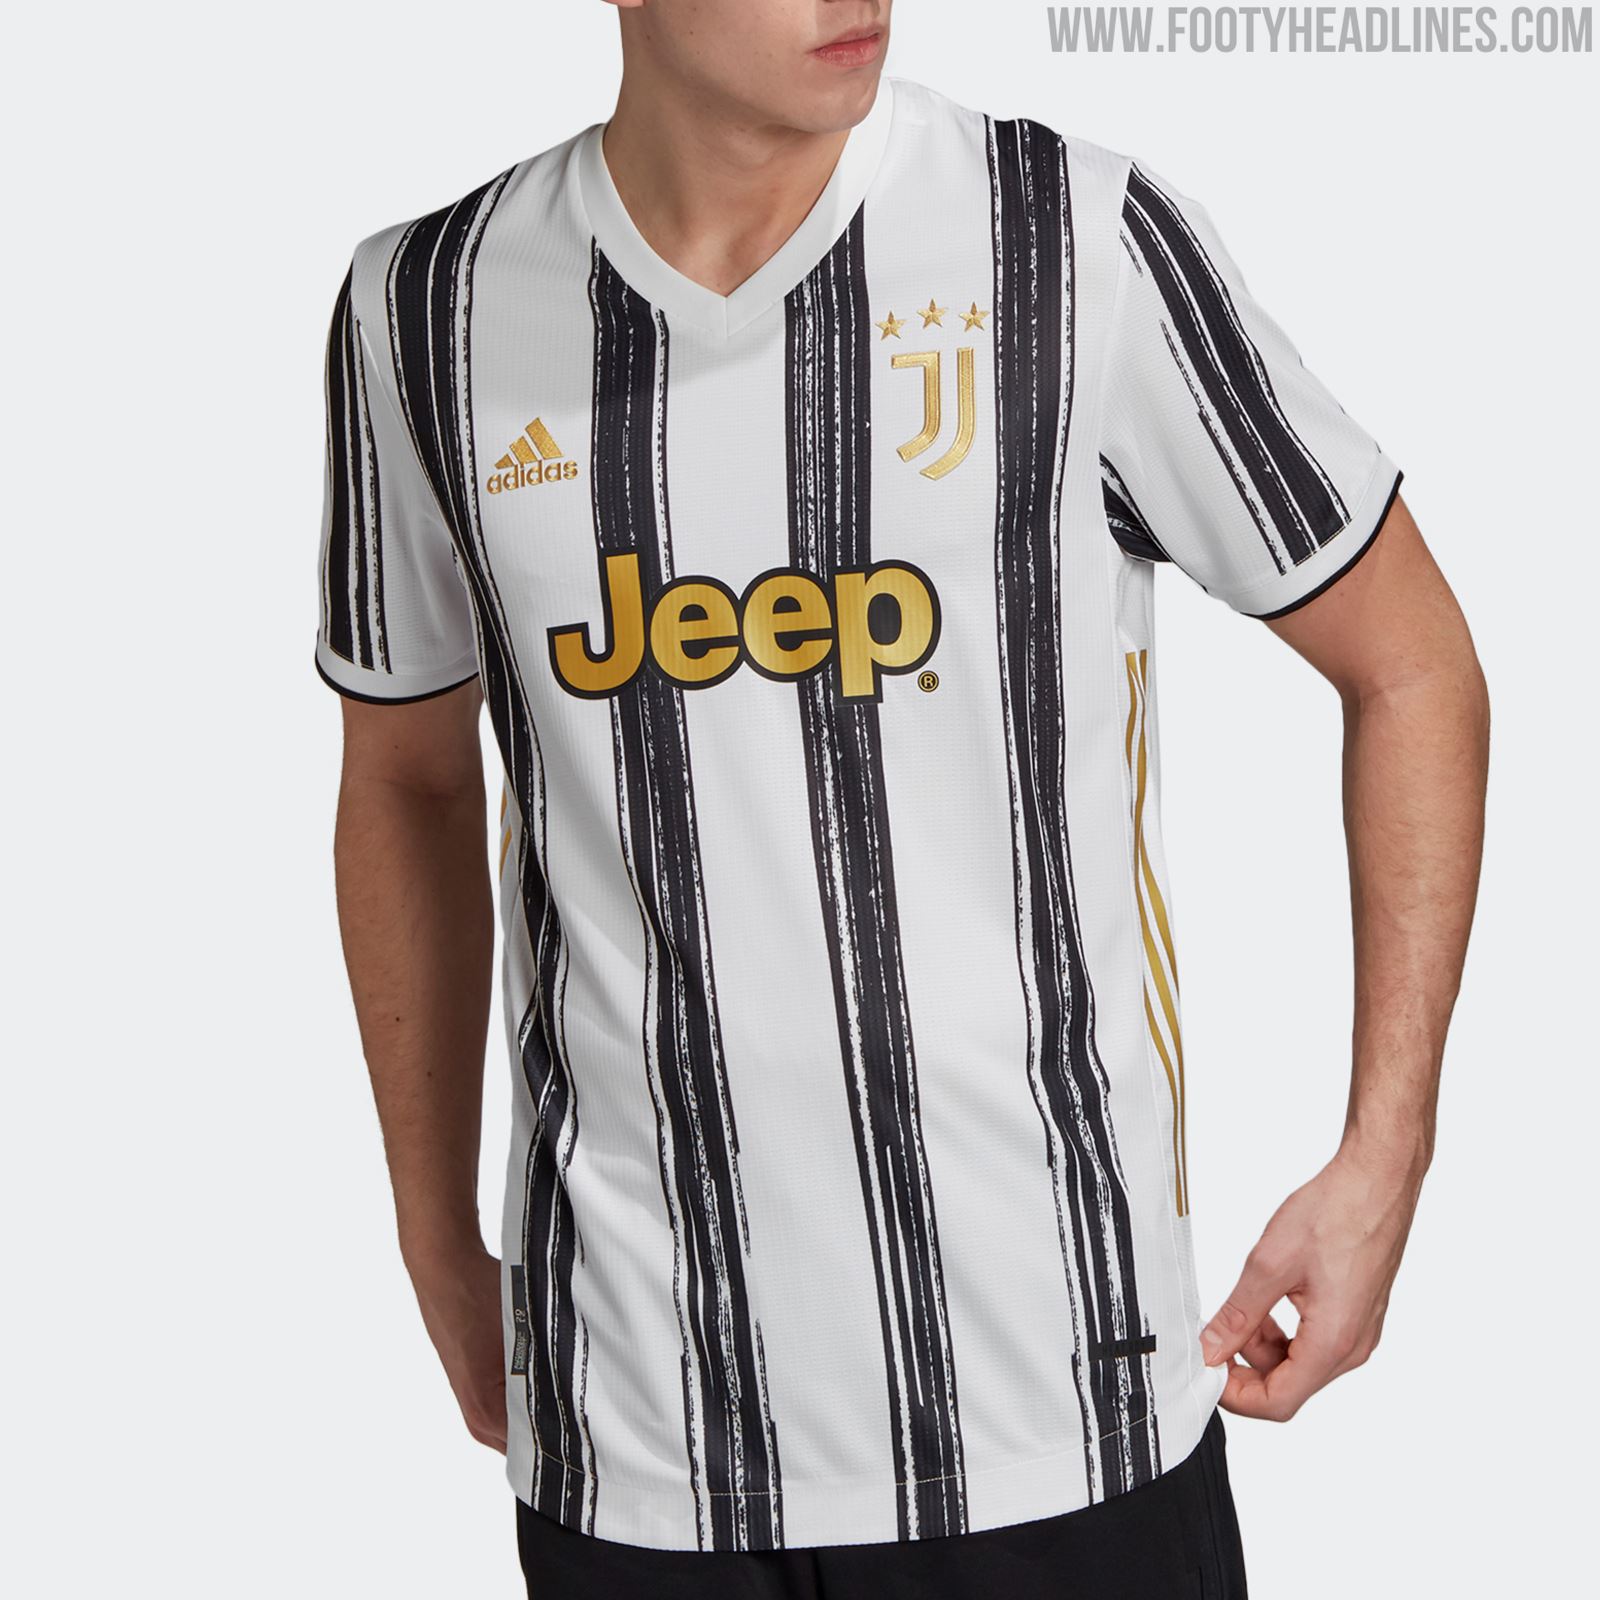 Juventus 2020-21 Home Kit - Footy